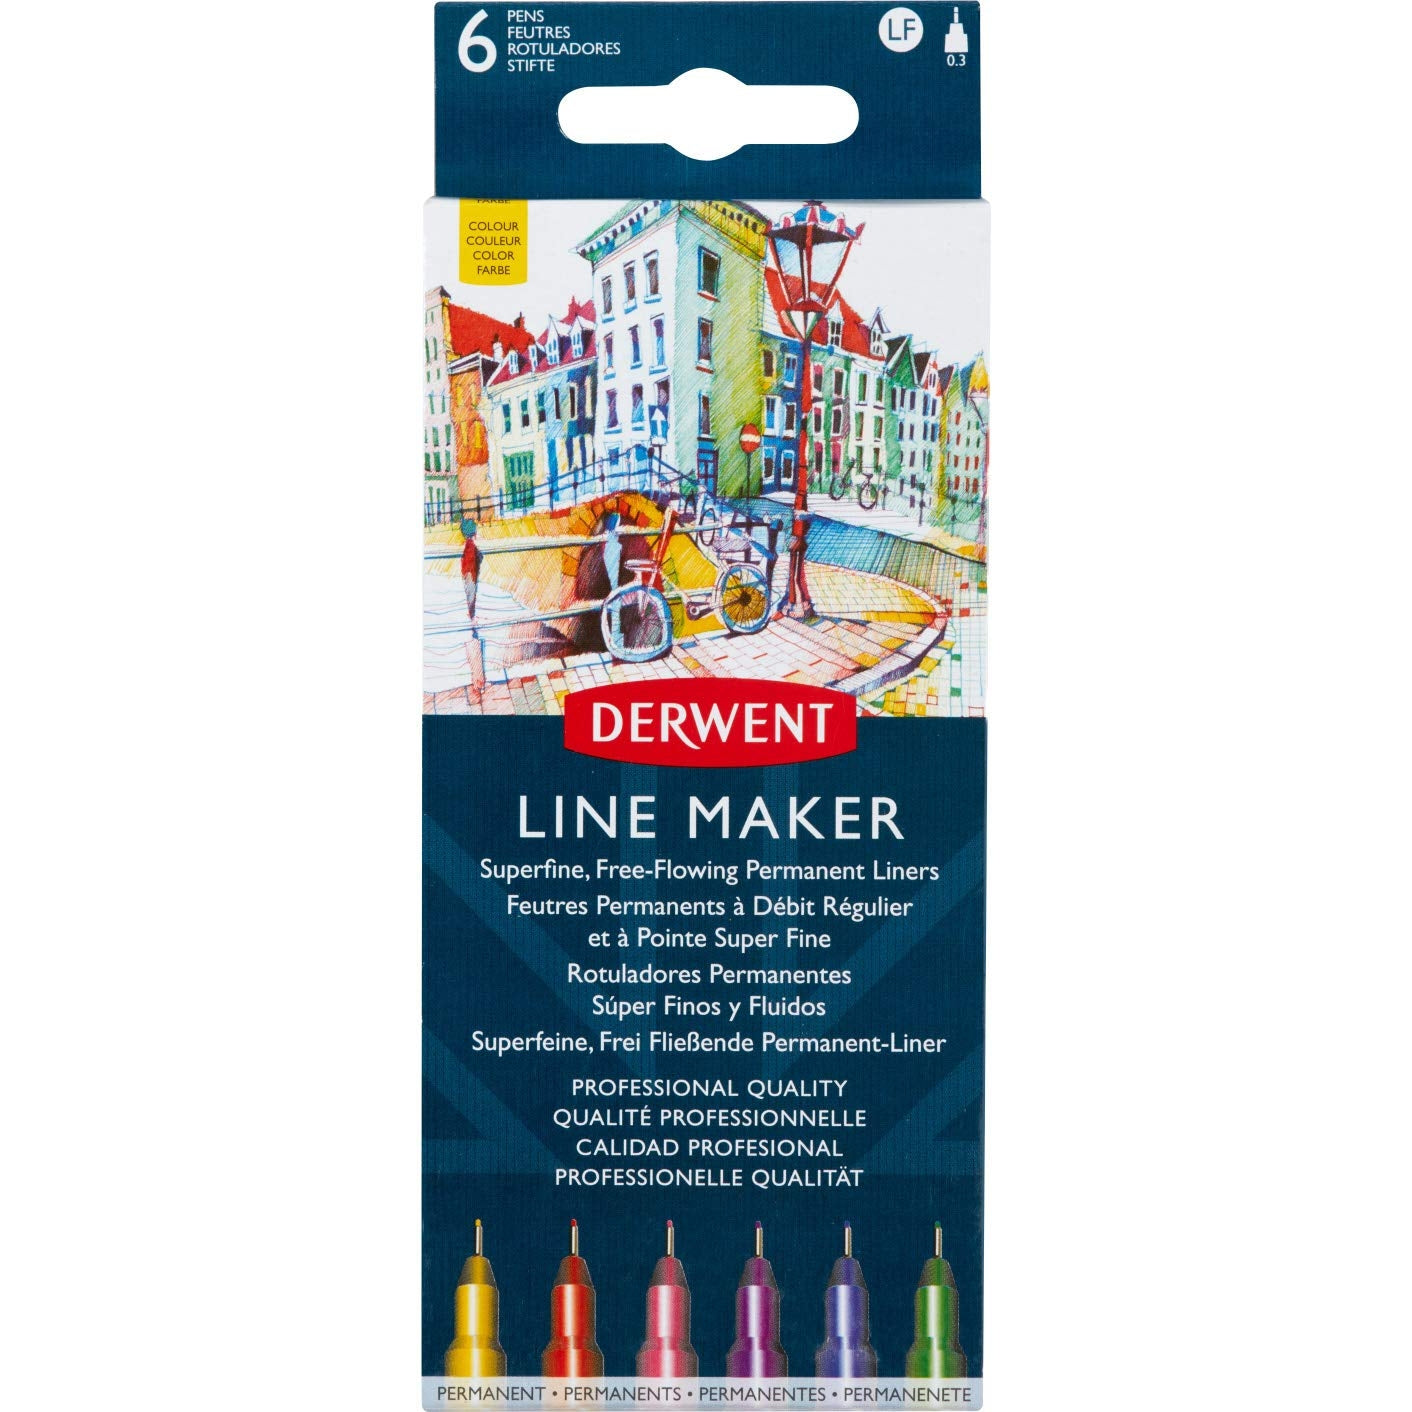 Derwent - Line Maker Pens - 6x Assorted Colours - Nib size 0.3mm